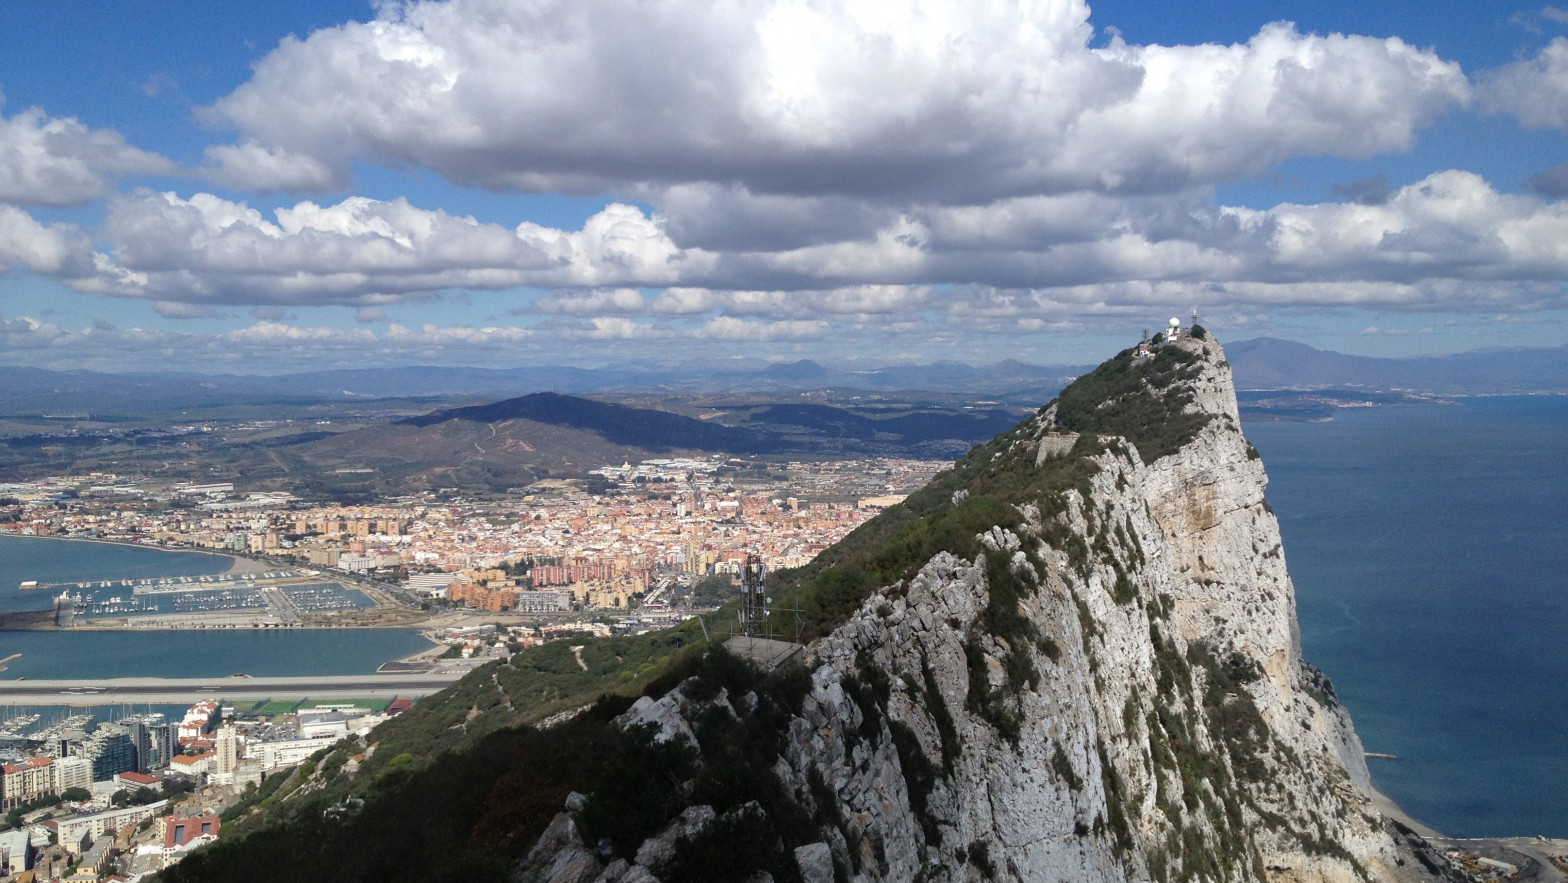 Roce diplomático entre España y Gibraltar por un plan urbanístico al este del Peñón